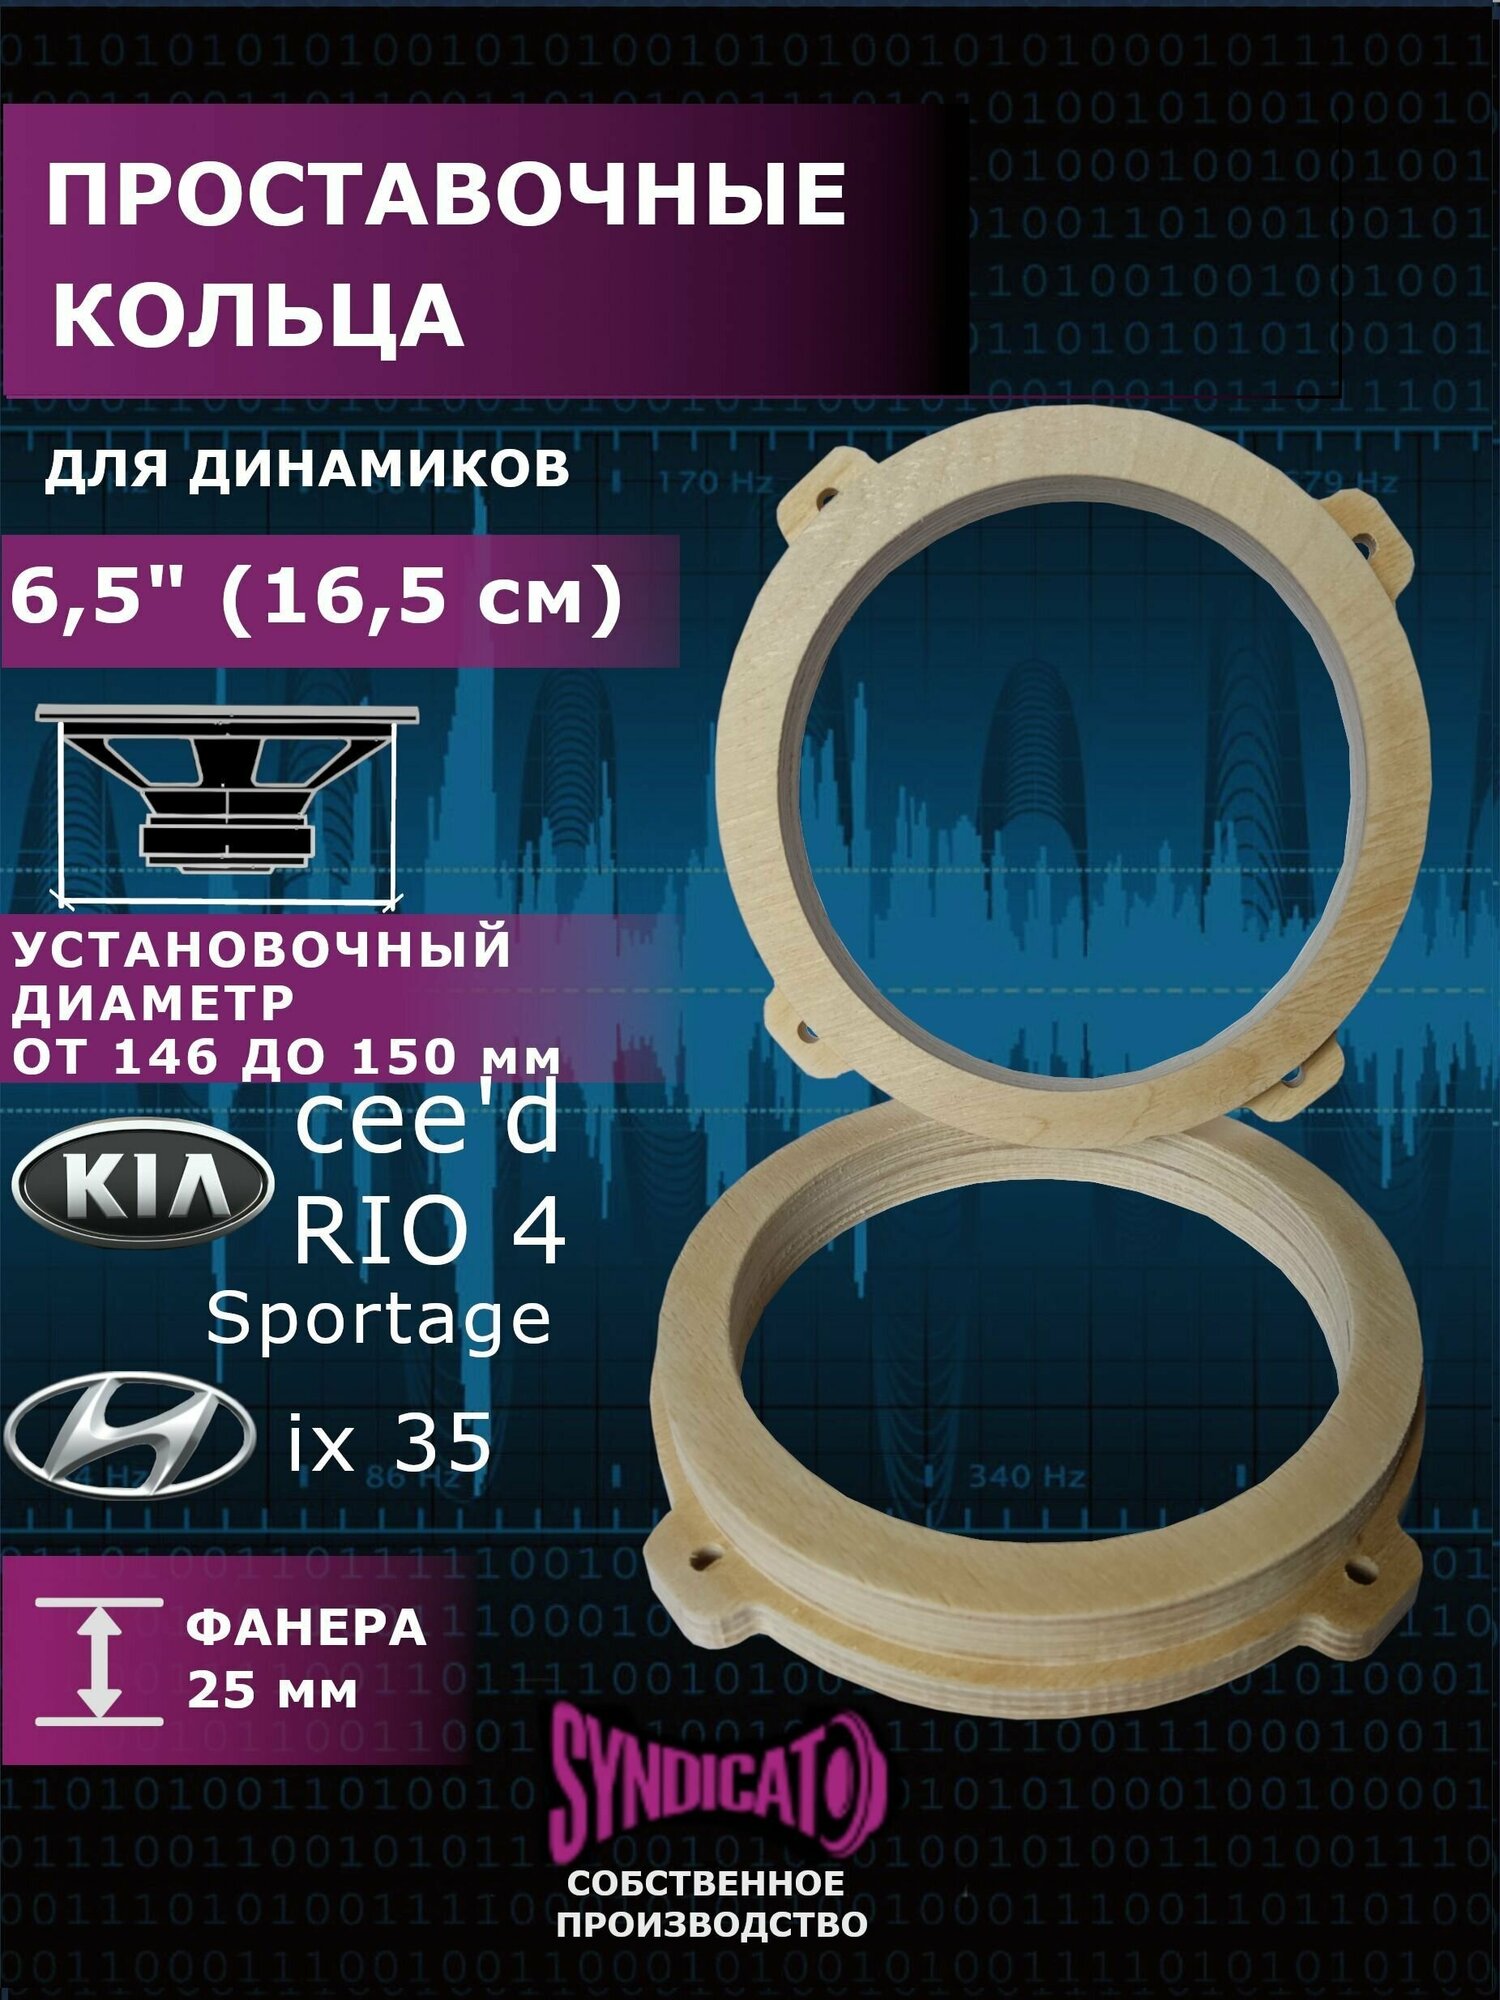 Проставочные кольца под динамики 16,5 см универсальные